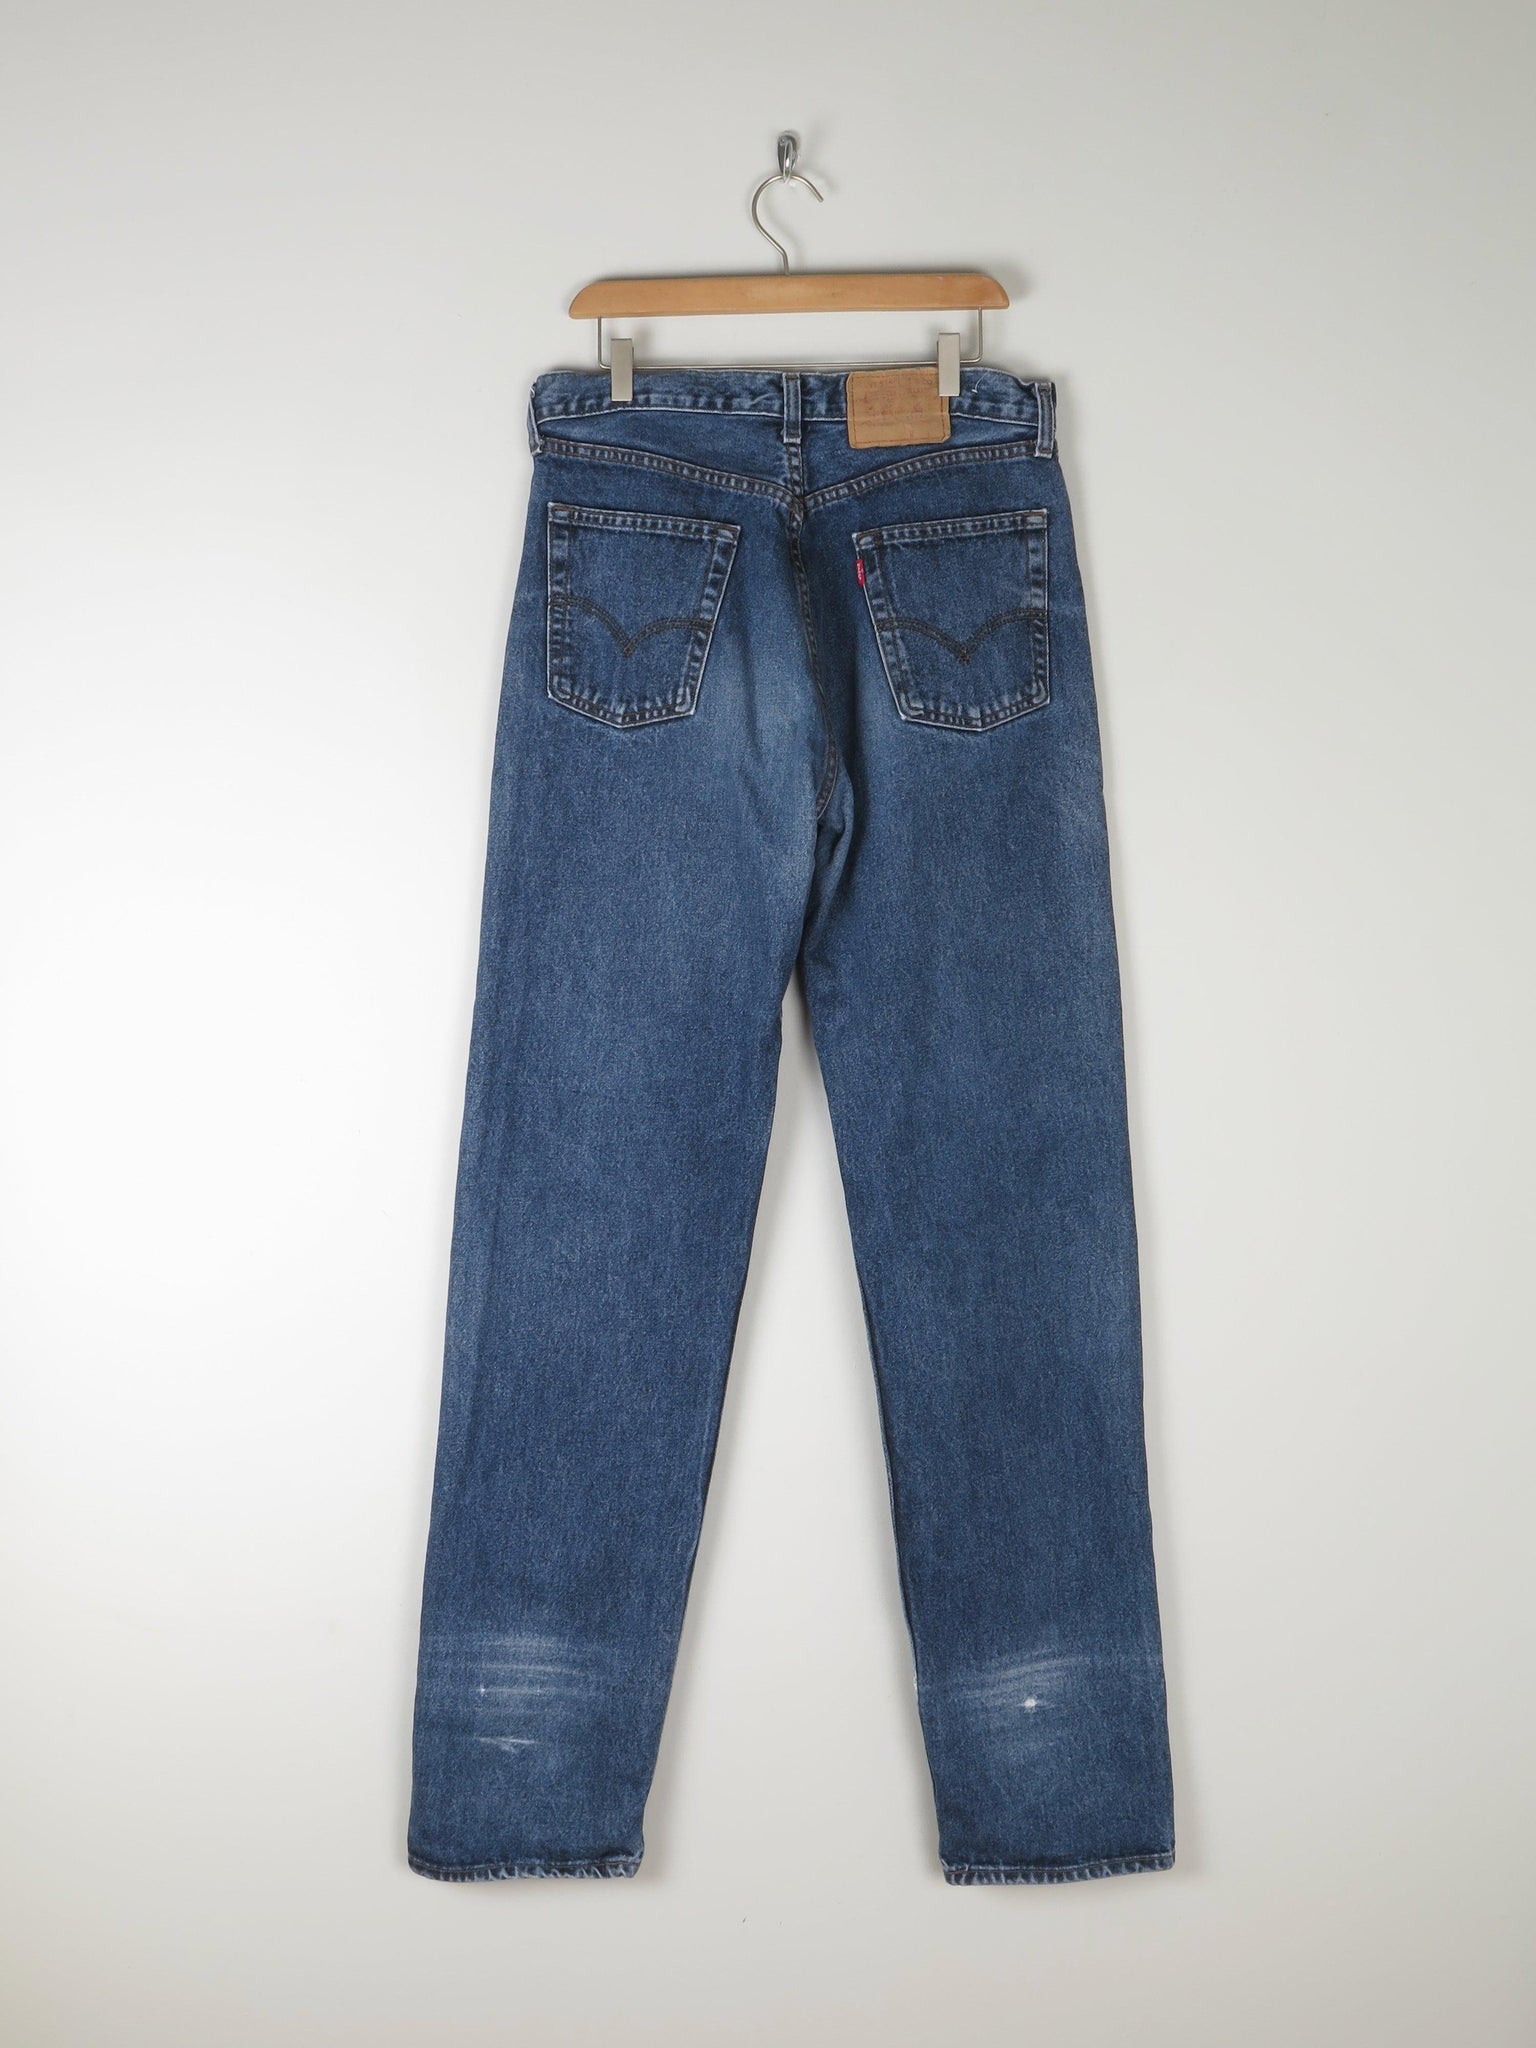 Men’s Levis 510 Blue Denim Jeans 33/36 - The Harlequin